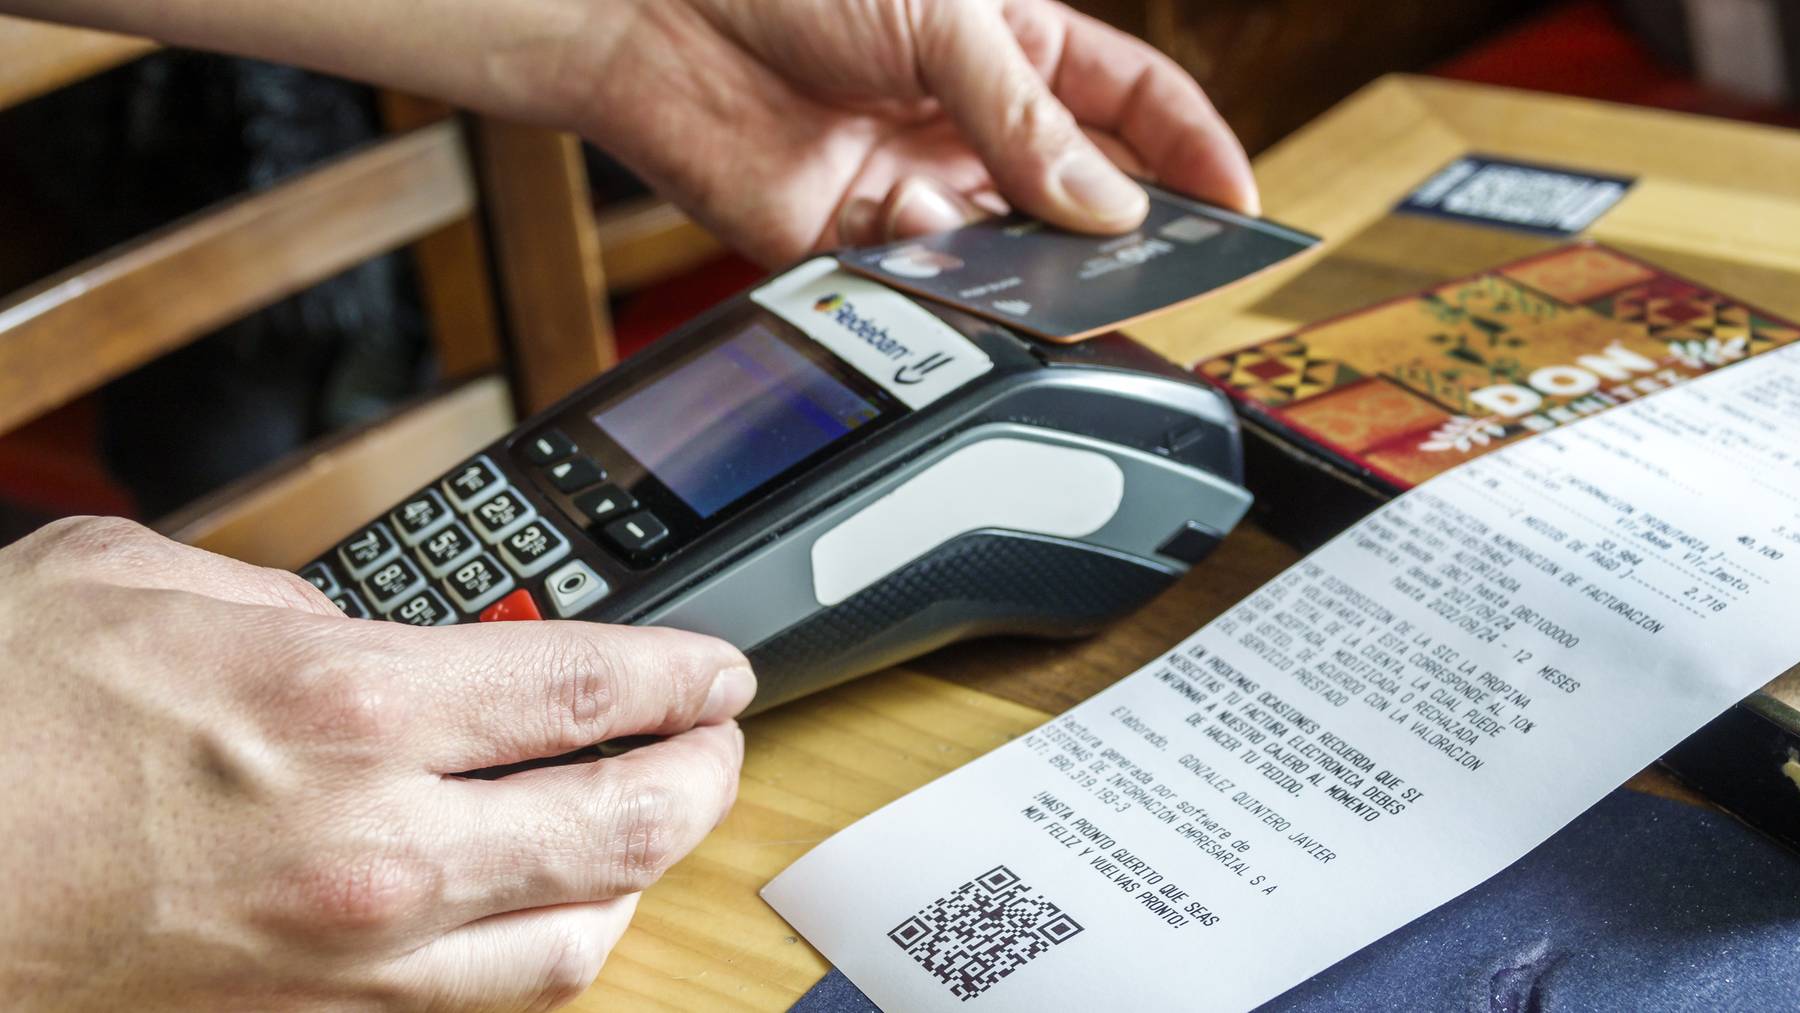 Viele Leute bezahlen auch ohne Zwang bereits lieber mit Kreditkarte.